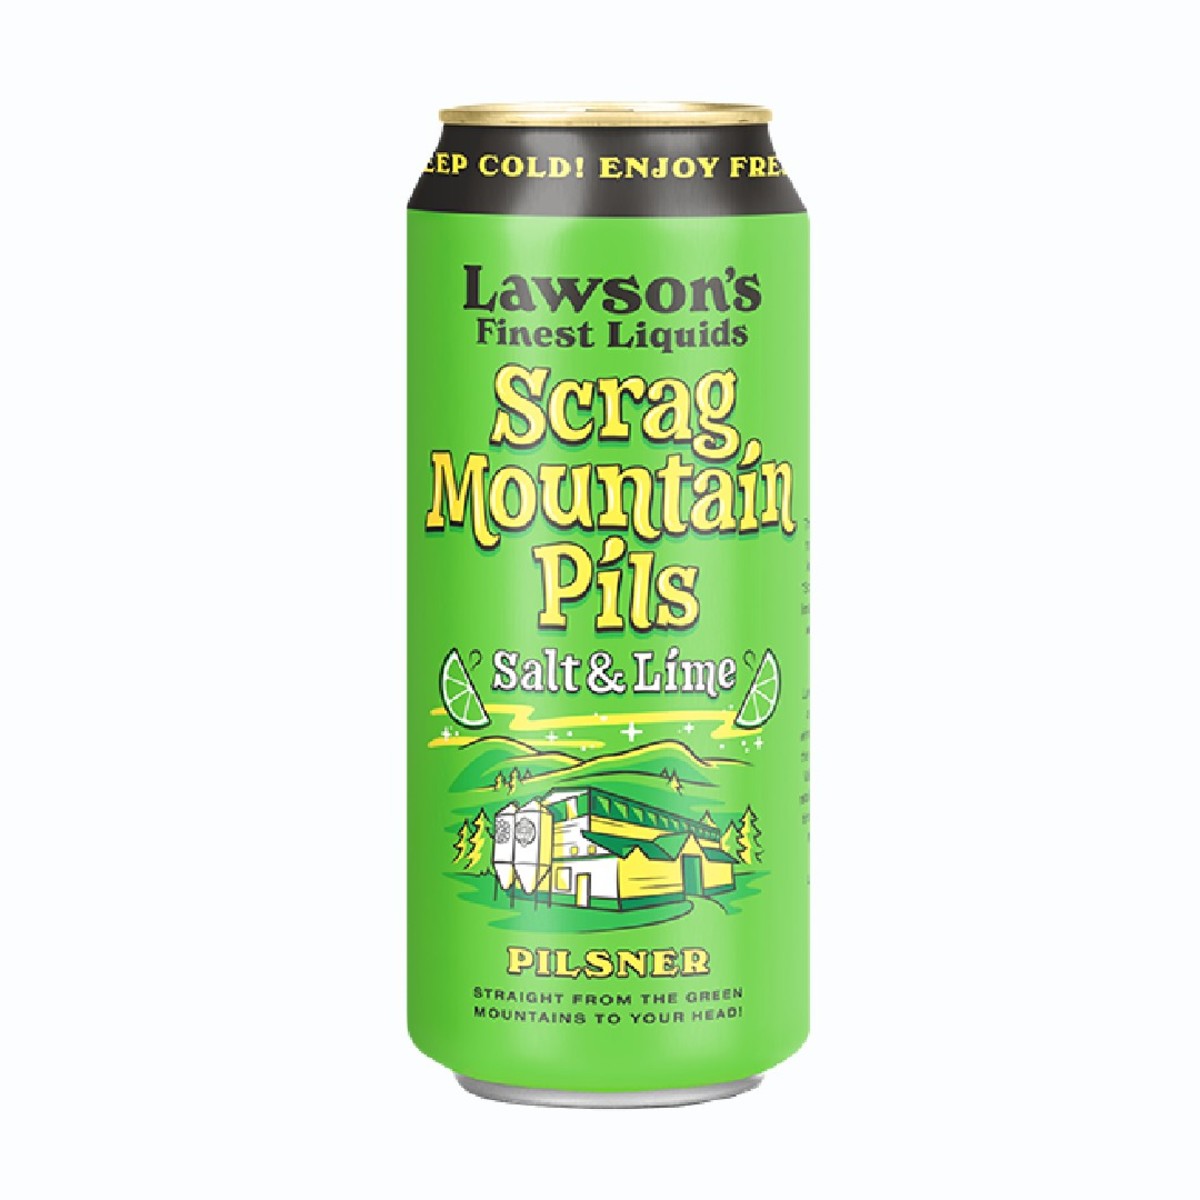 Lawson’s Finest Liquids Scrag Mountain Pils Salt & Lime